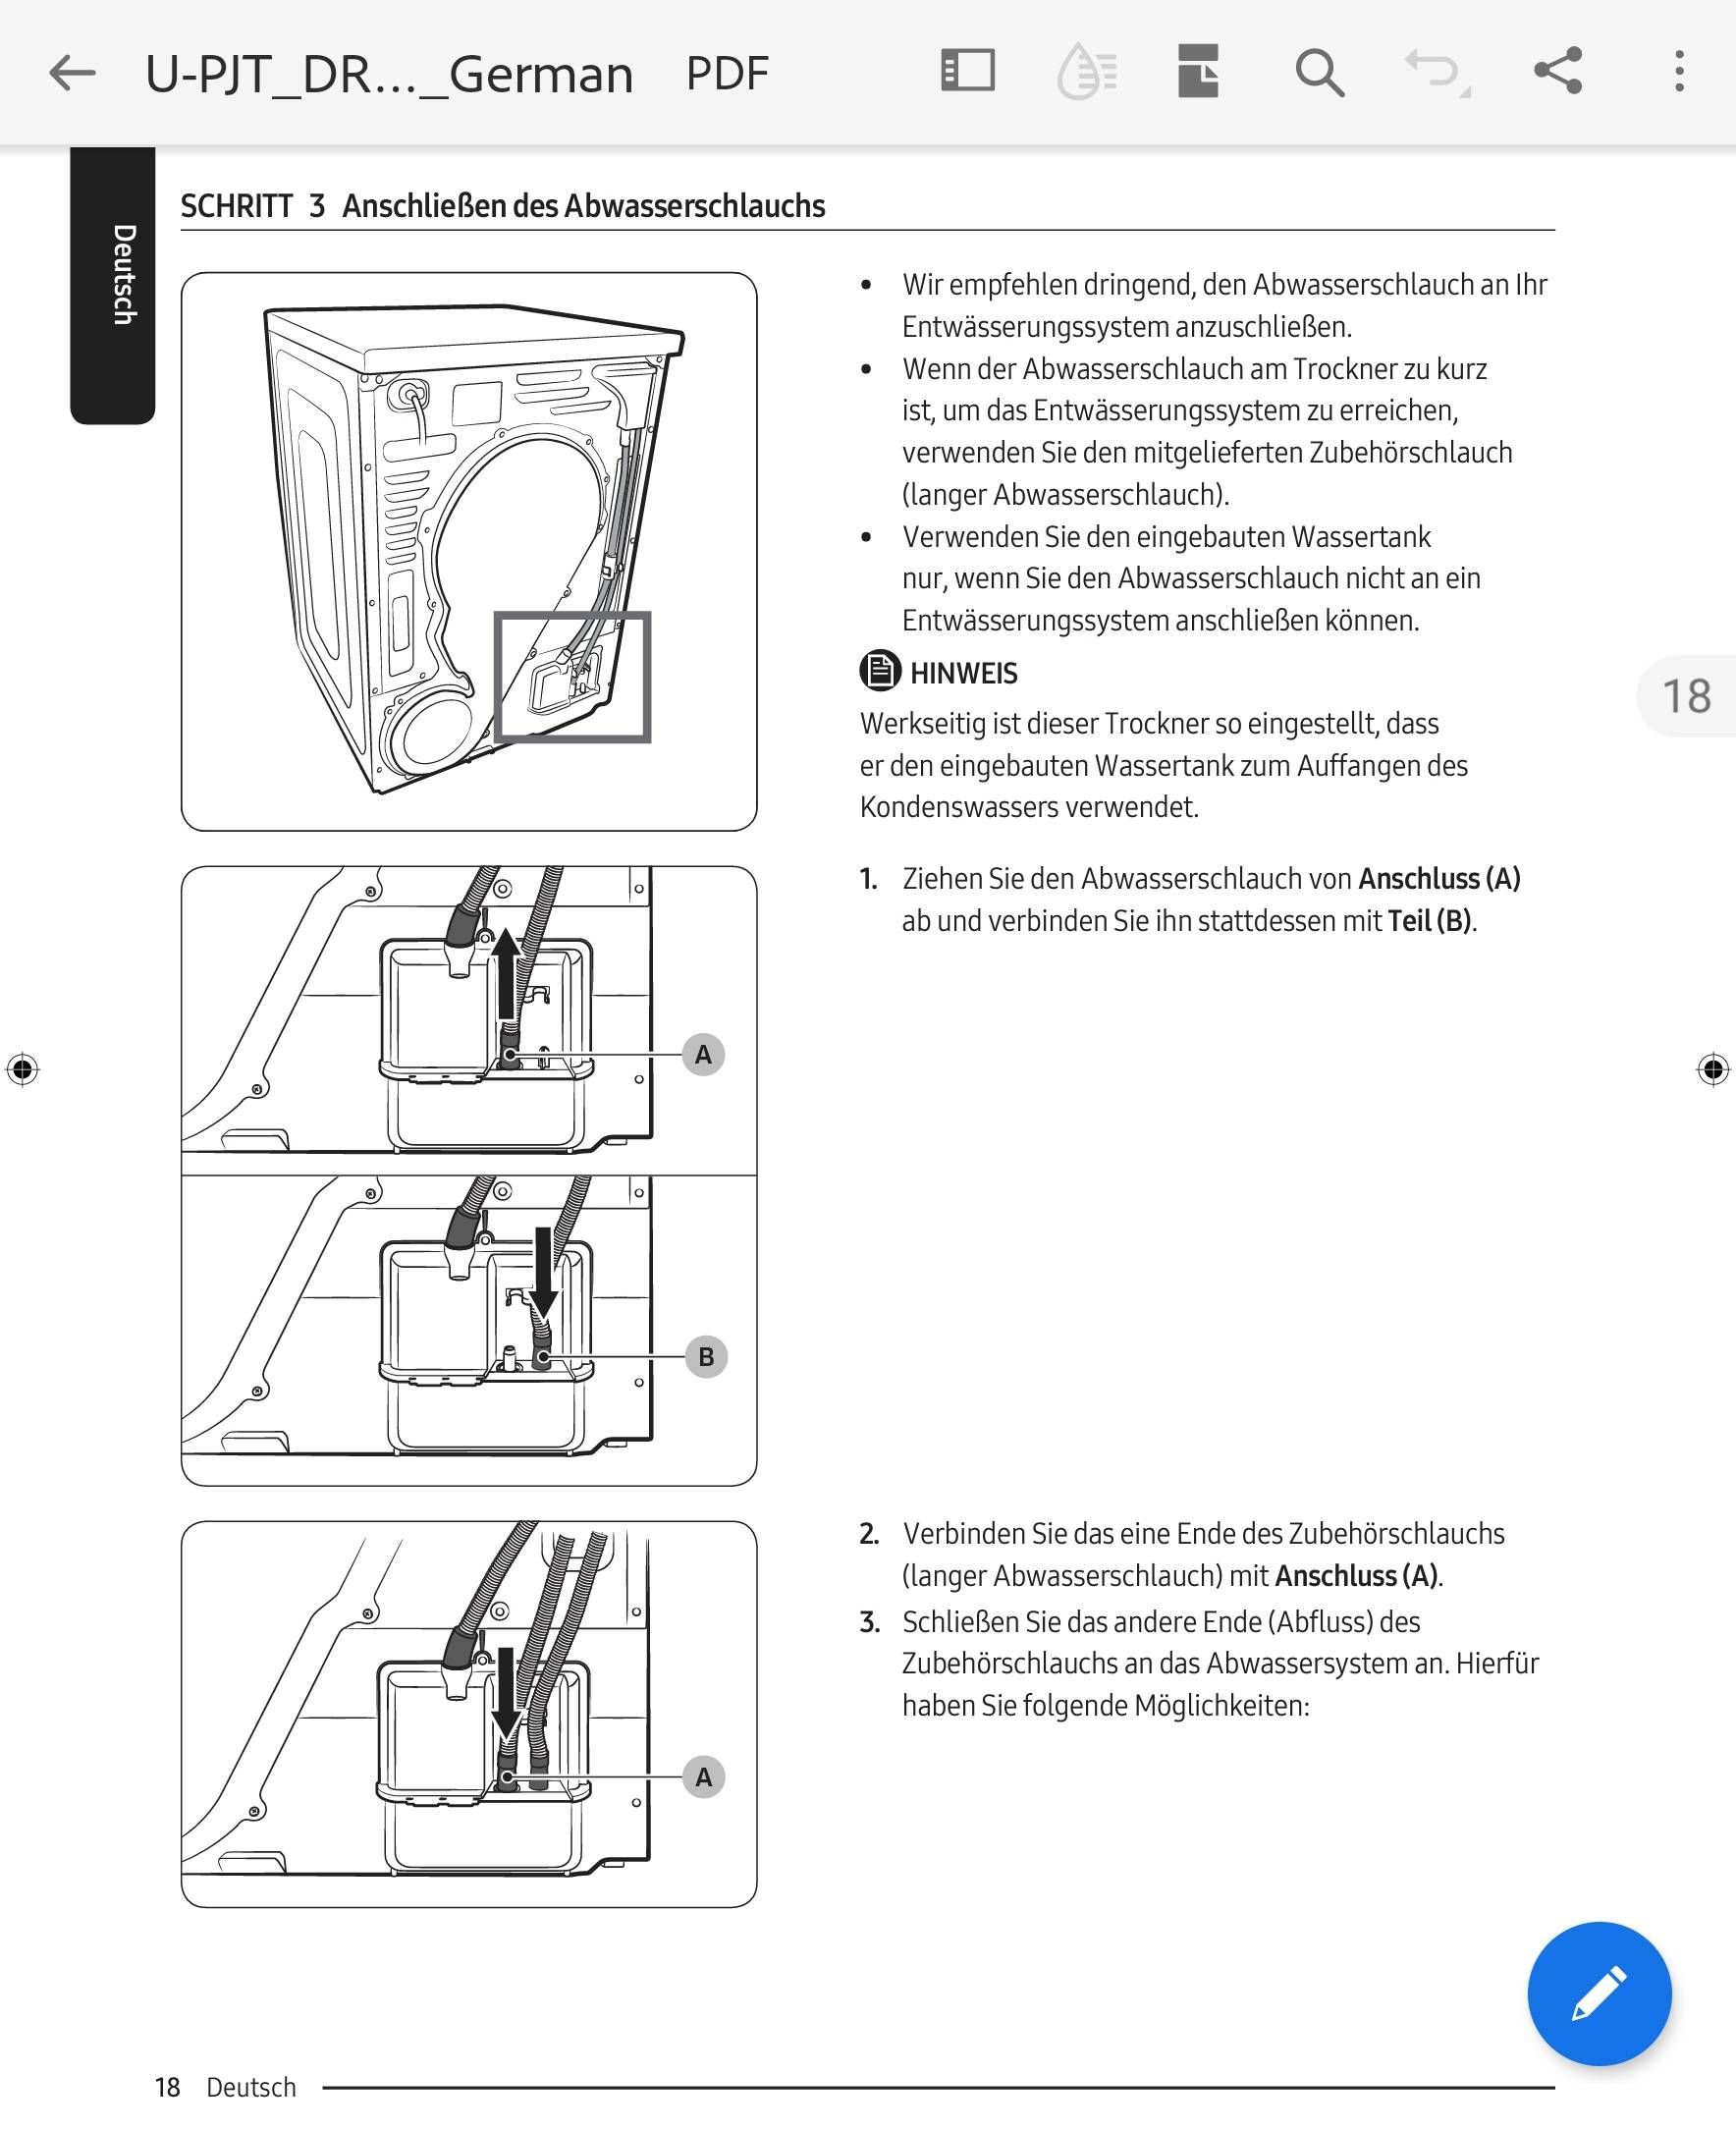 Trockner ist am Abwasserschlauch angeschlossen - trotzdem Wasserbehälter  leeren?? - Samsung Community